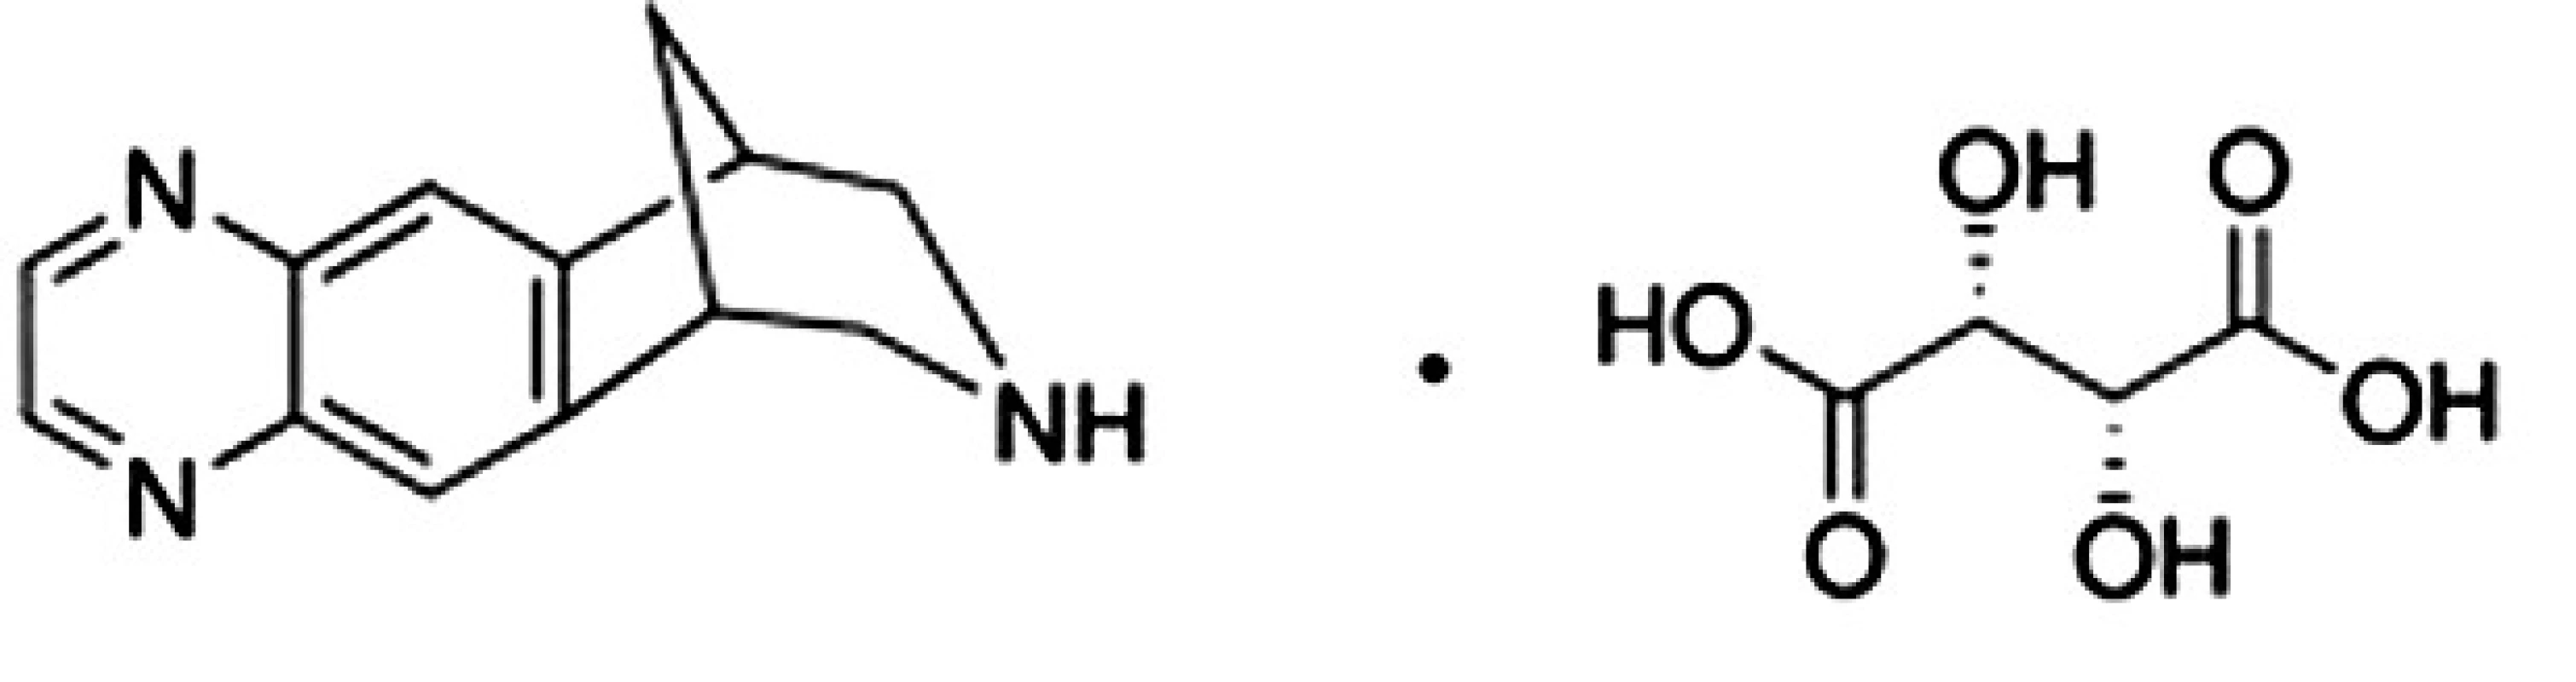 Chemická štruktúra vareniklín tartarátu&lt;sup&gt;6)&lt;/sup&gt;